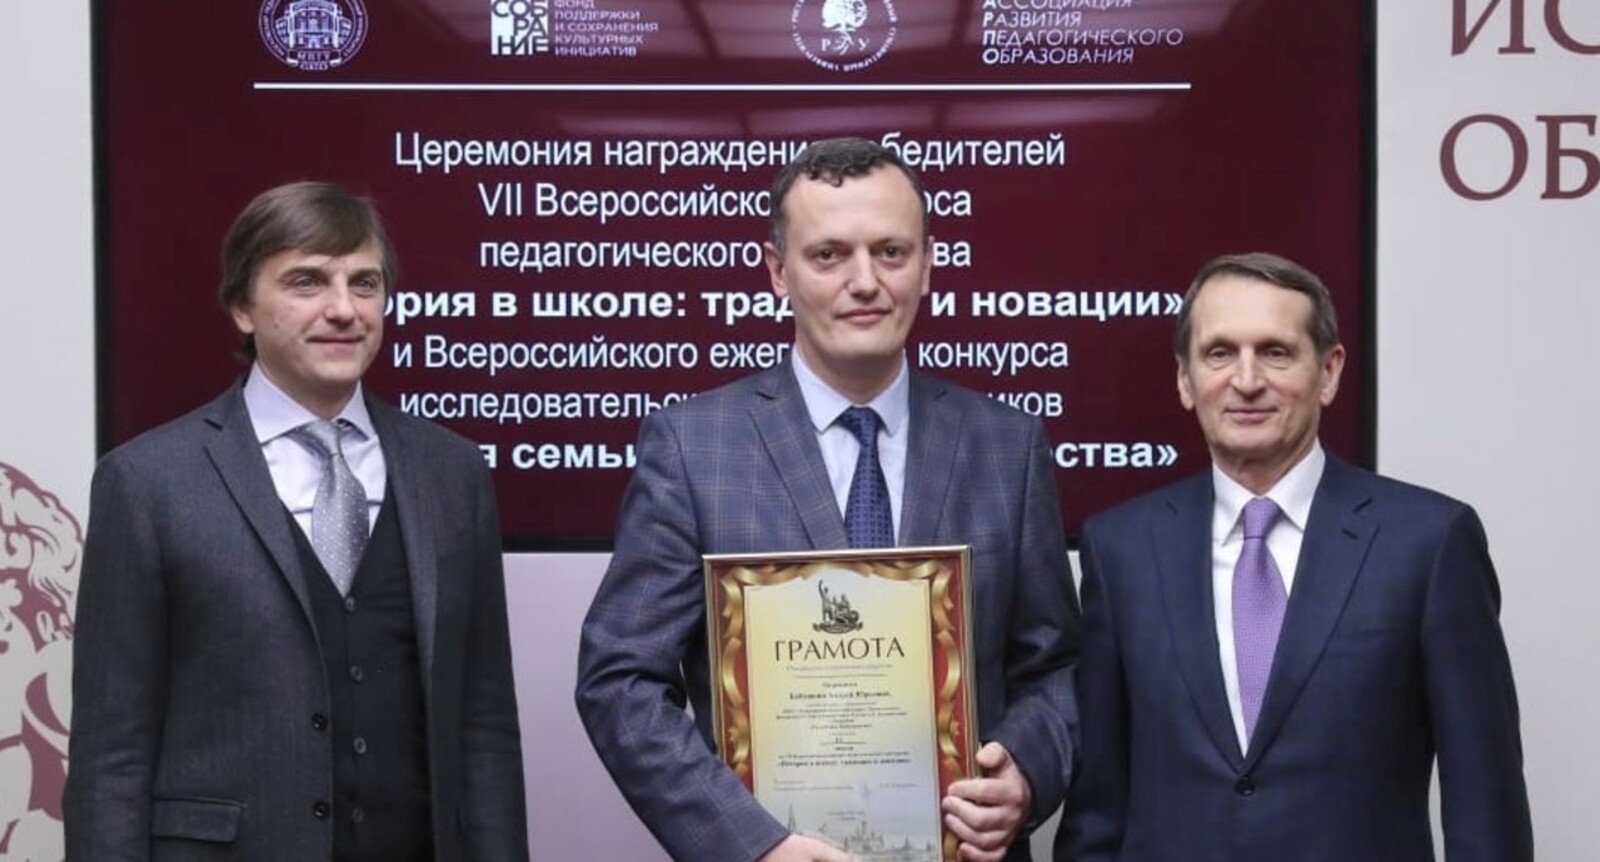 Учитель истории из башкирского Ишимбая стал призёром VII Всероссийского конкурса педагогического мастерства